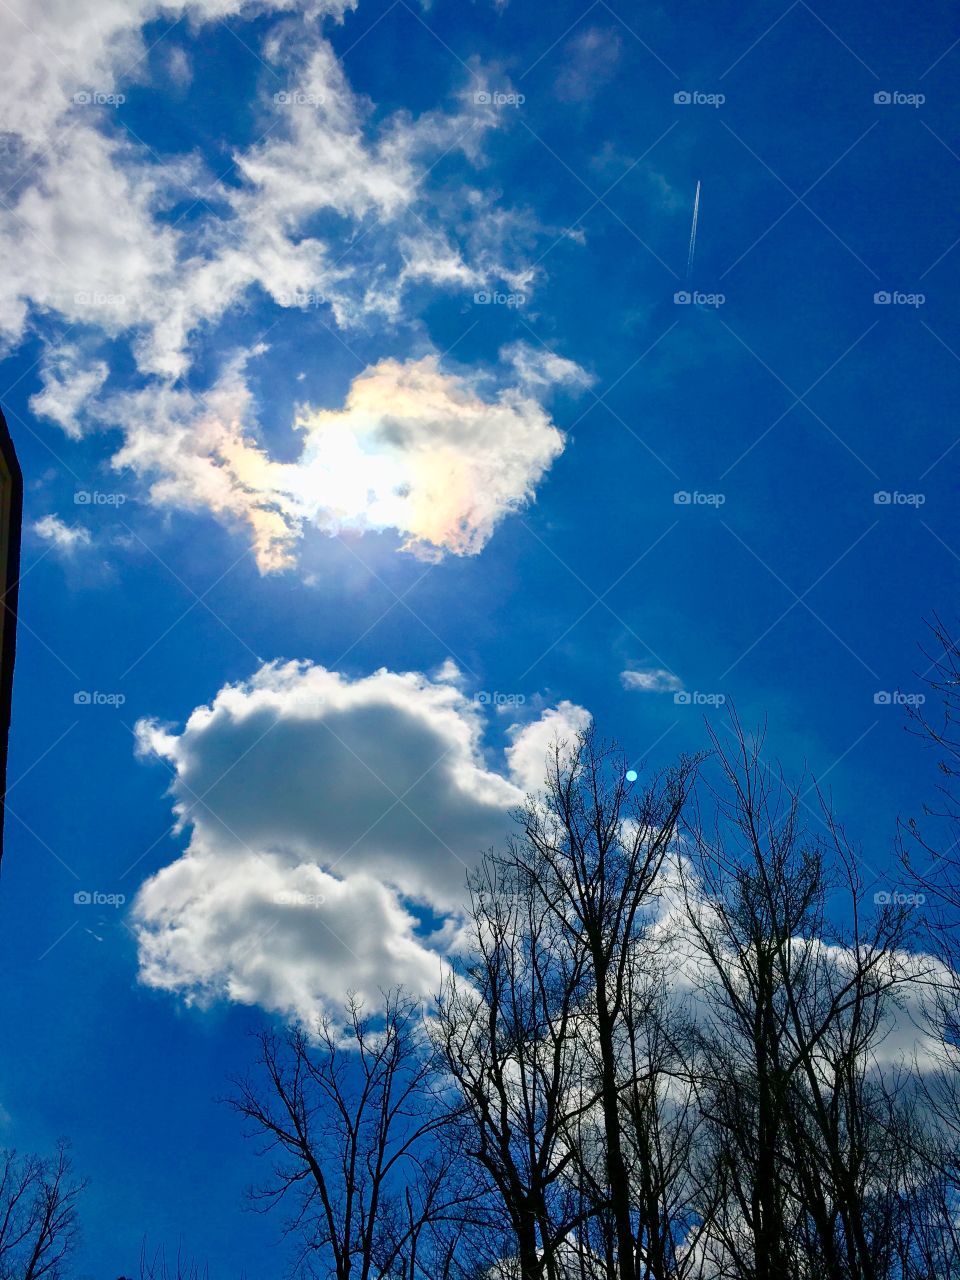 Cloud under the sun shine